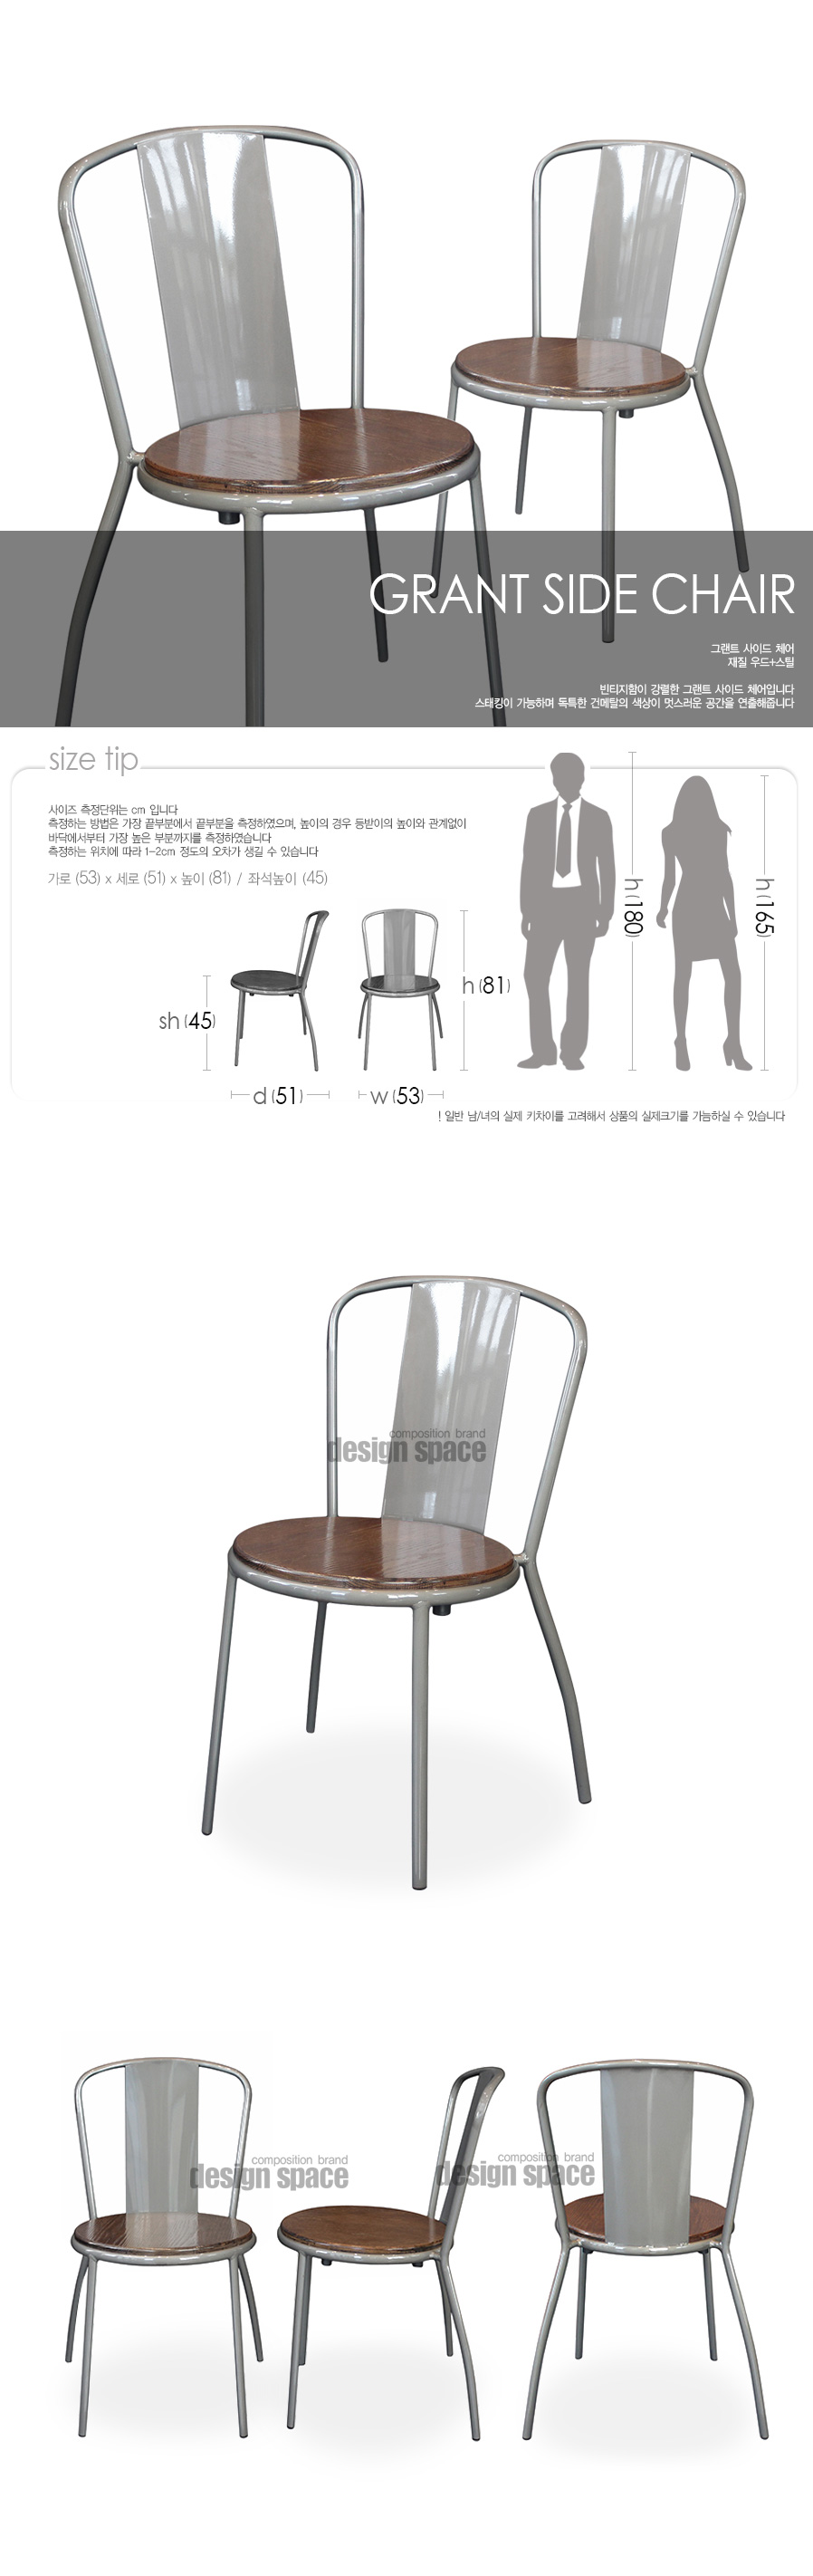 grant-side-chair_01.jpg